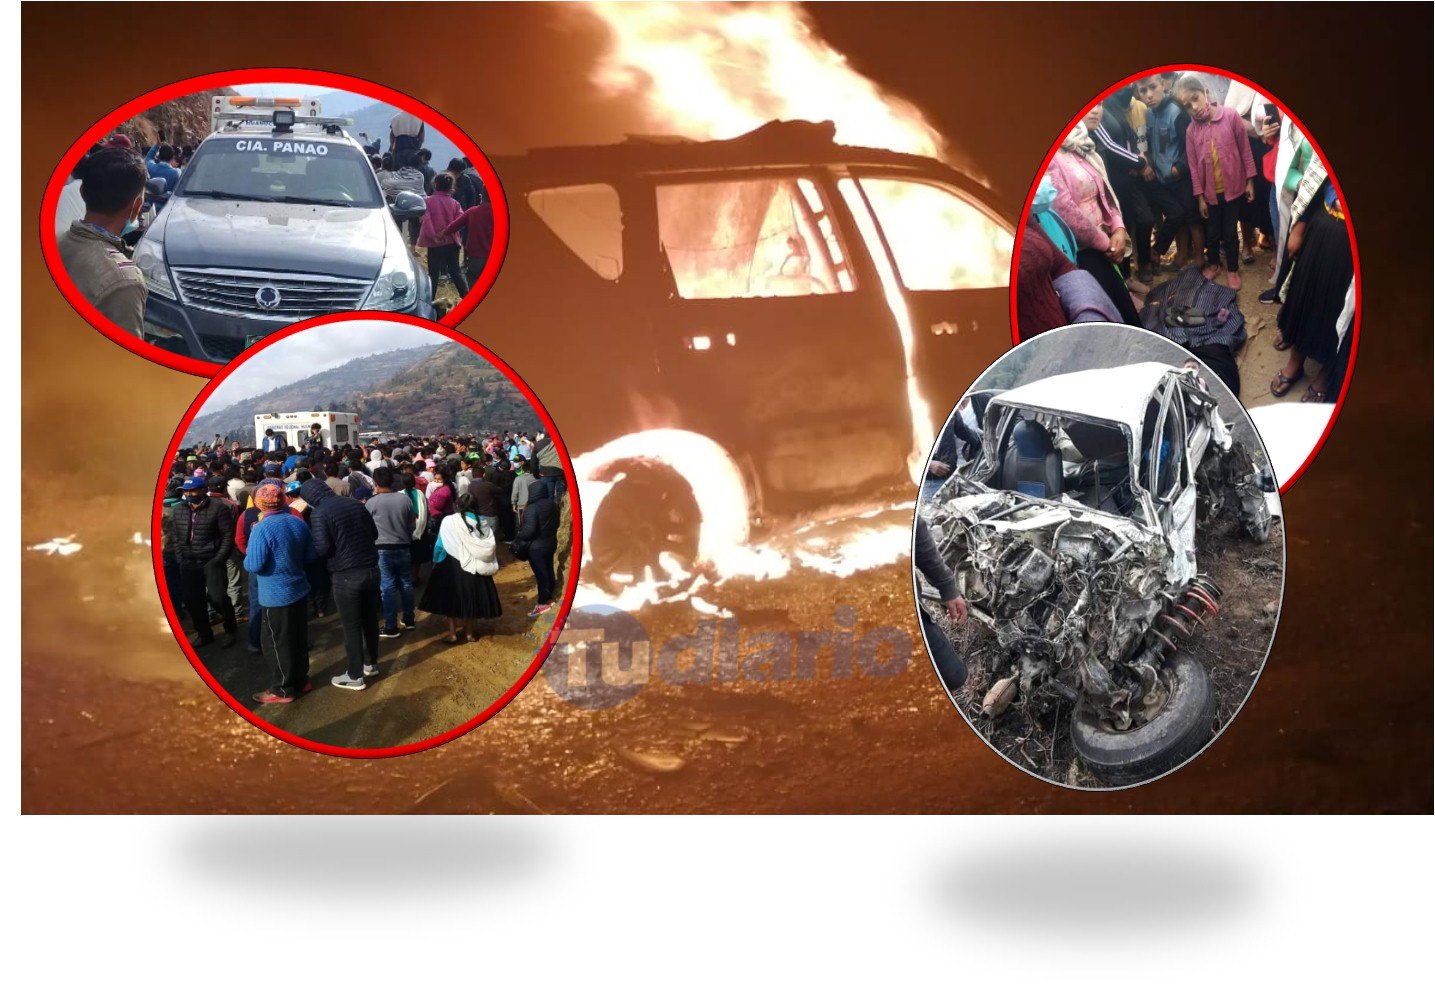 ¿Que pasó en Panao? Pobladores quemaron patrullero tras la caída de un auto al abismo en el que murió una joven